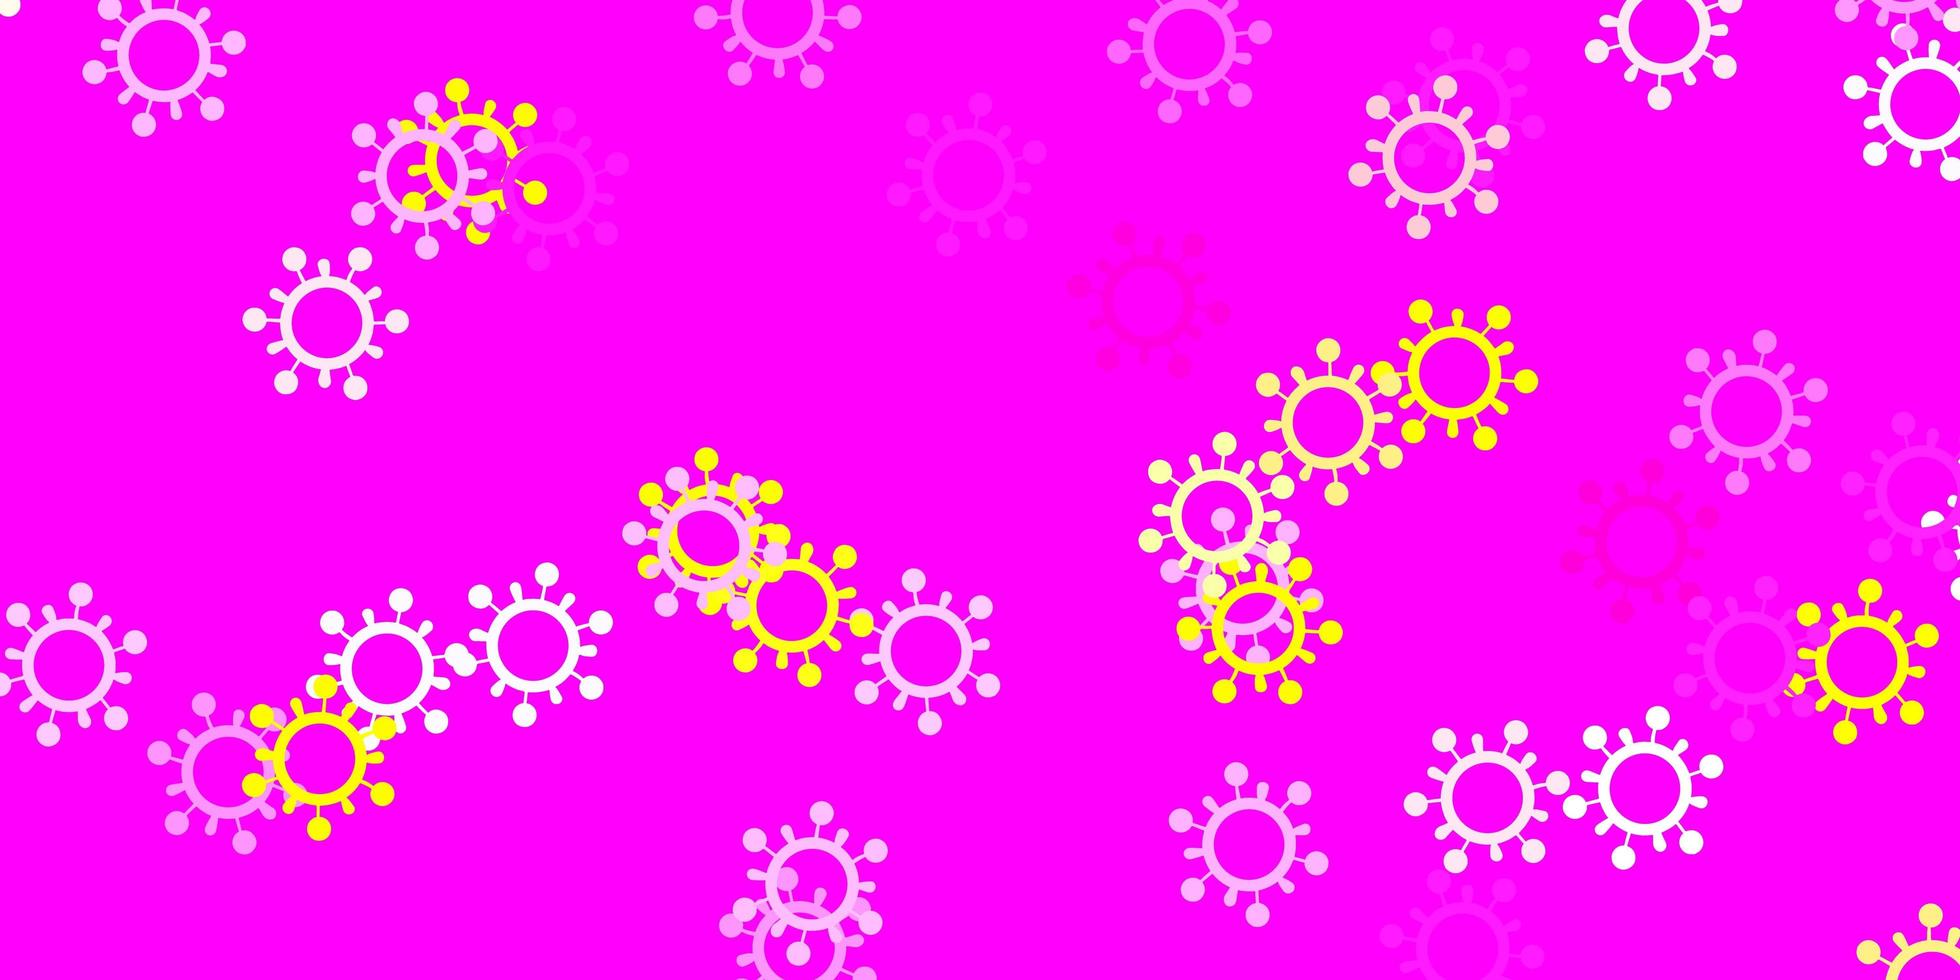 Fondo de vector rosa claro, amarillo con símbolos covid-19.